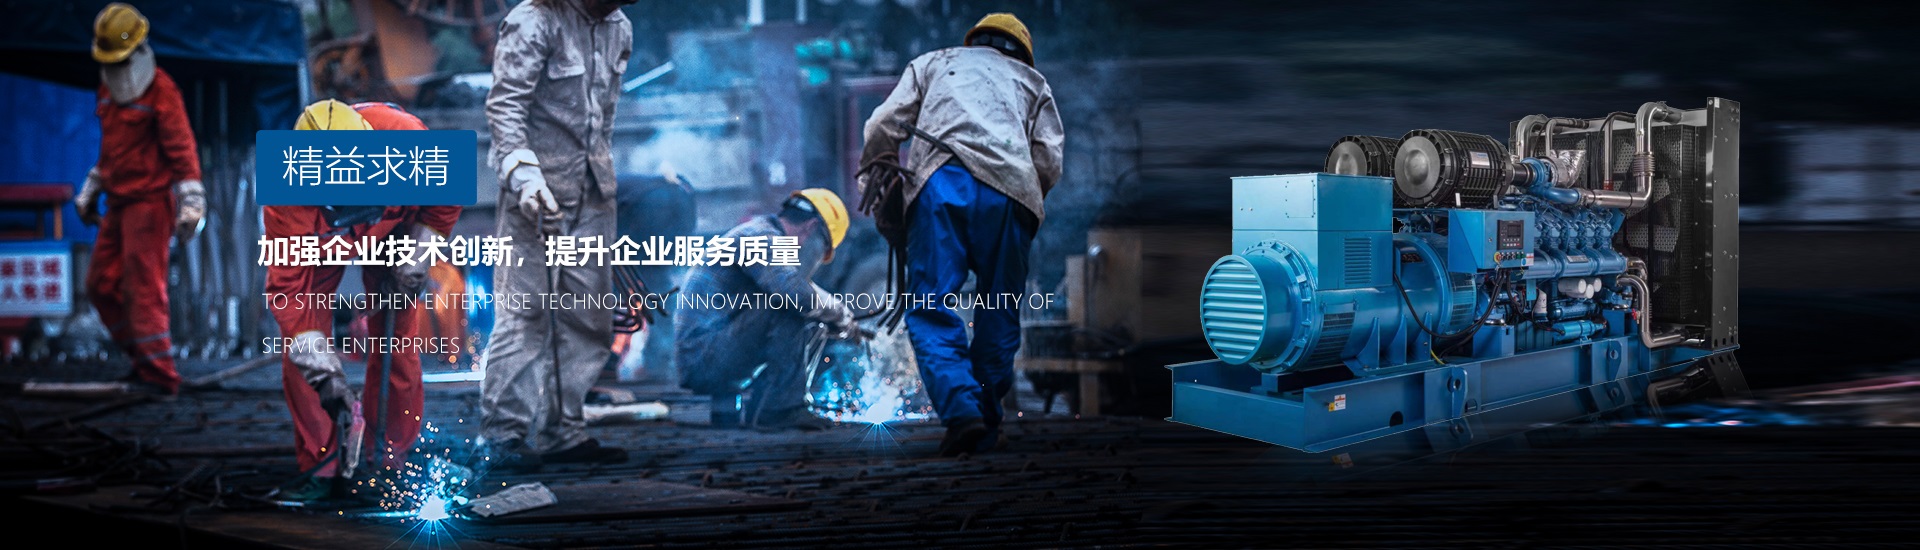 廣州發電機廠家追求精益求精、加強企業技術創新、提升企業服務質量